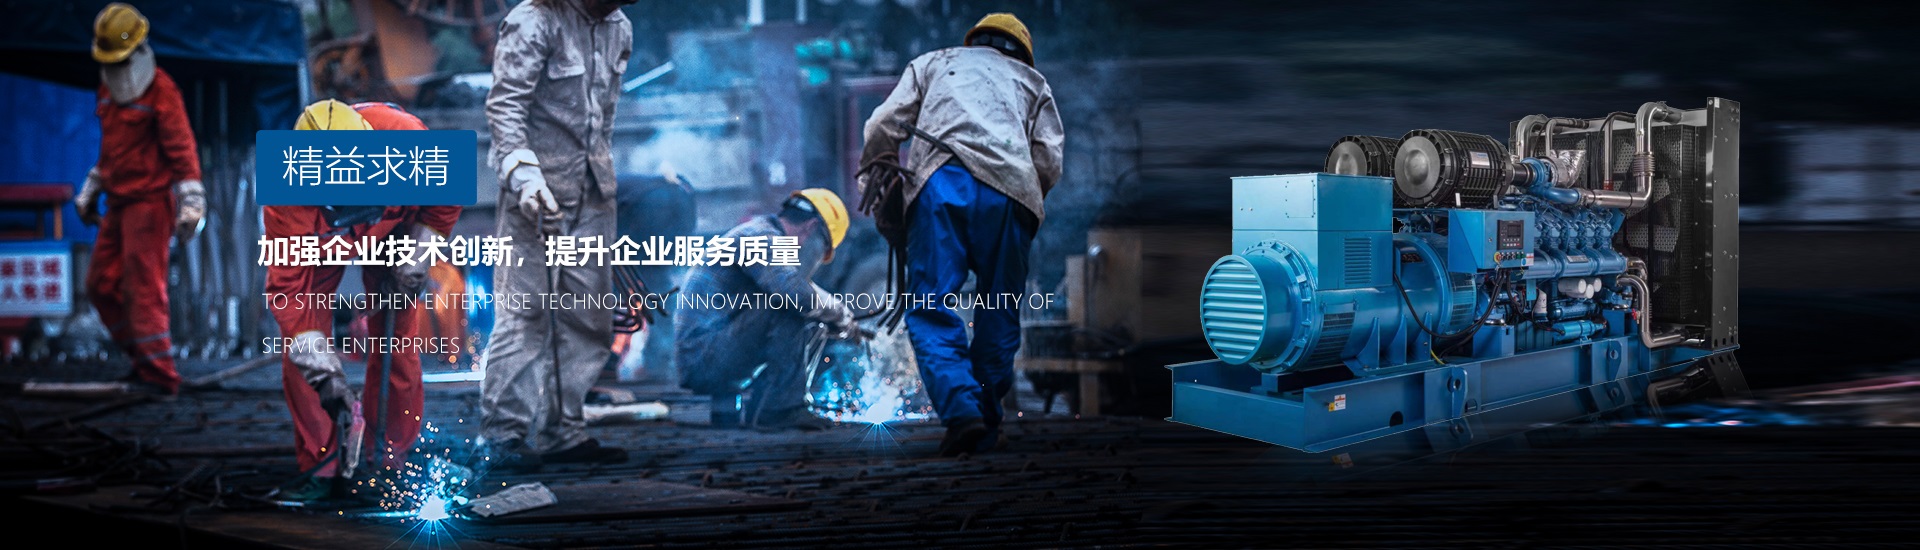 廣州發電機廠家追求精益求精、加強企業技術創新、提升企業服務質量